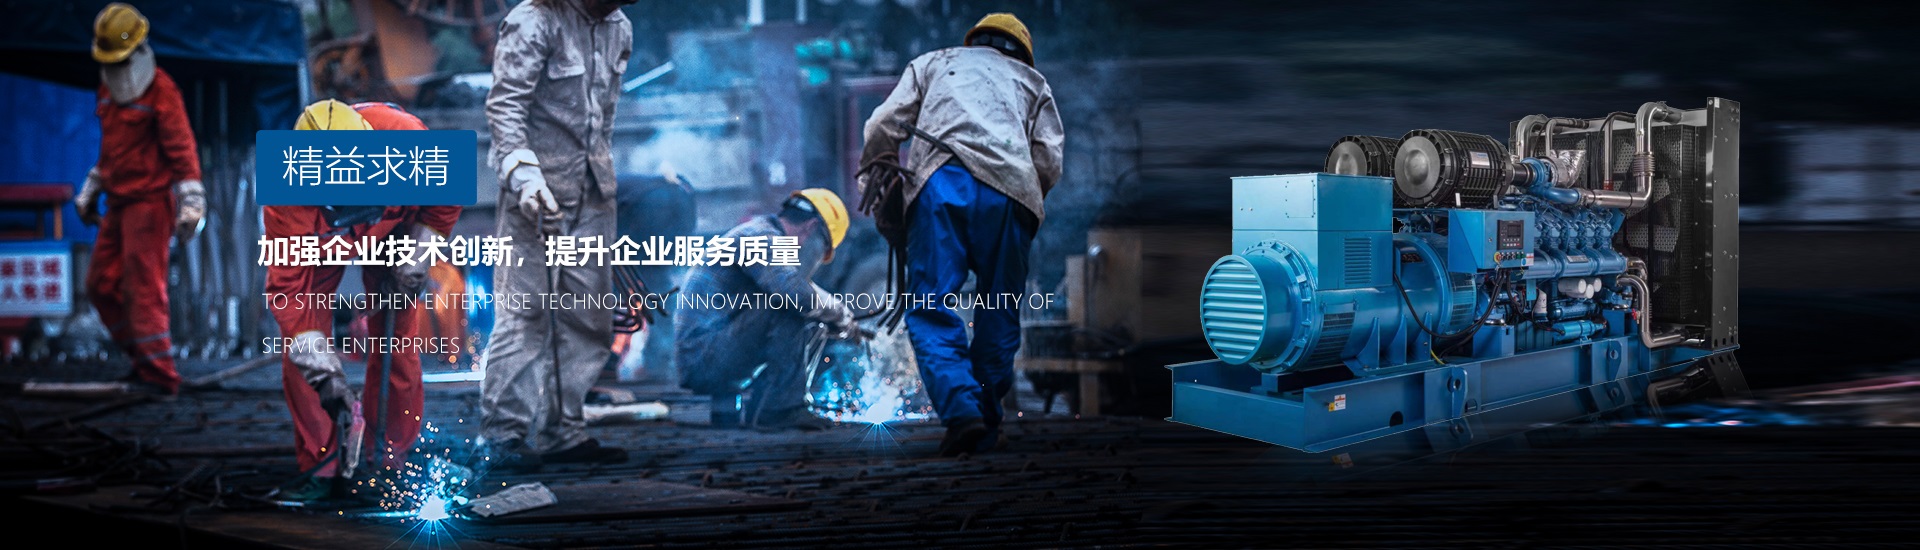 廣州發電機廠家追求精益求精、加強企業技術創新、提升企業服務質量